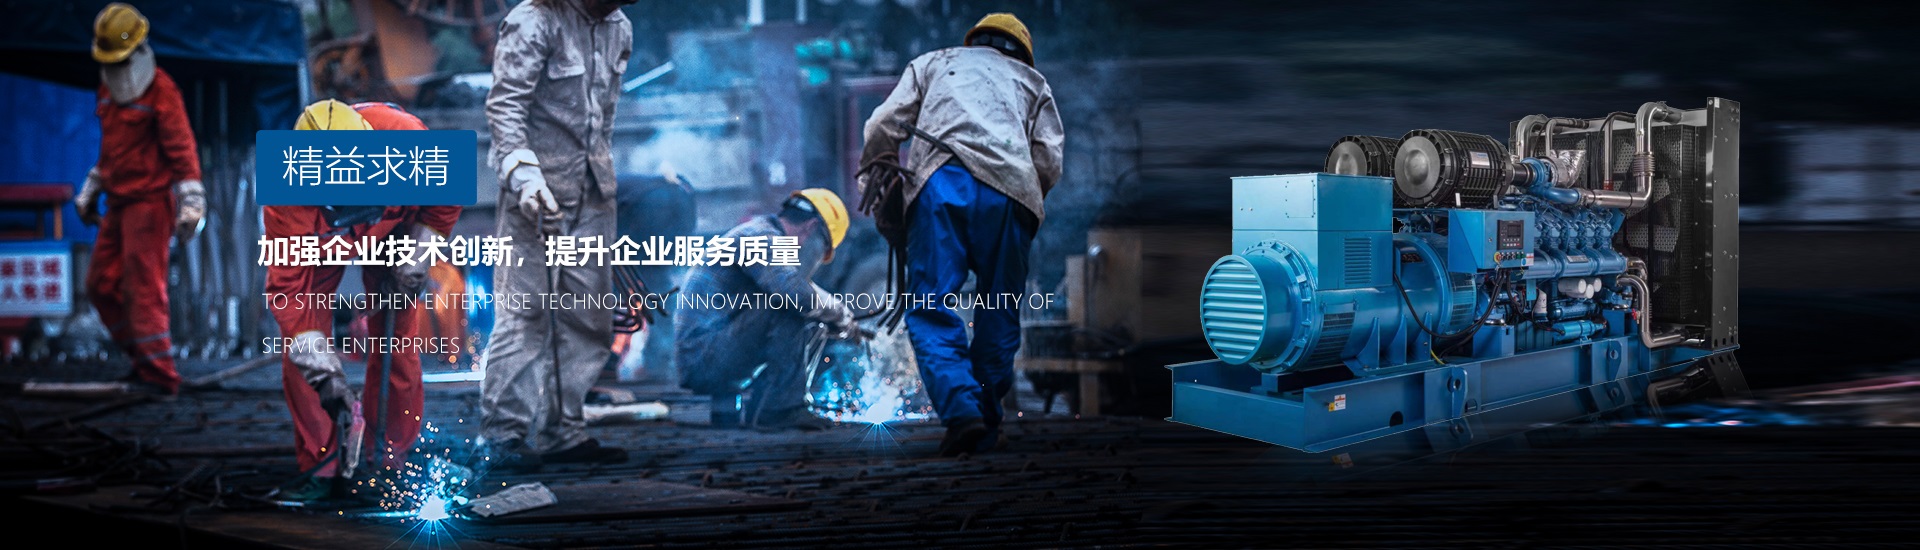 廣州發電機廠家追求精益求精、加強企業技術創新、提升企業服務質量